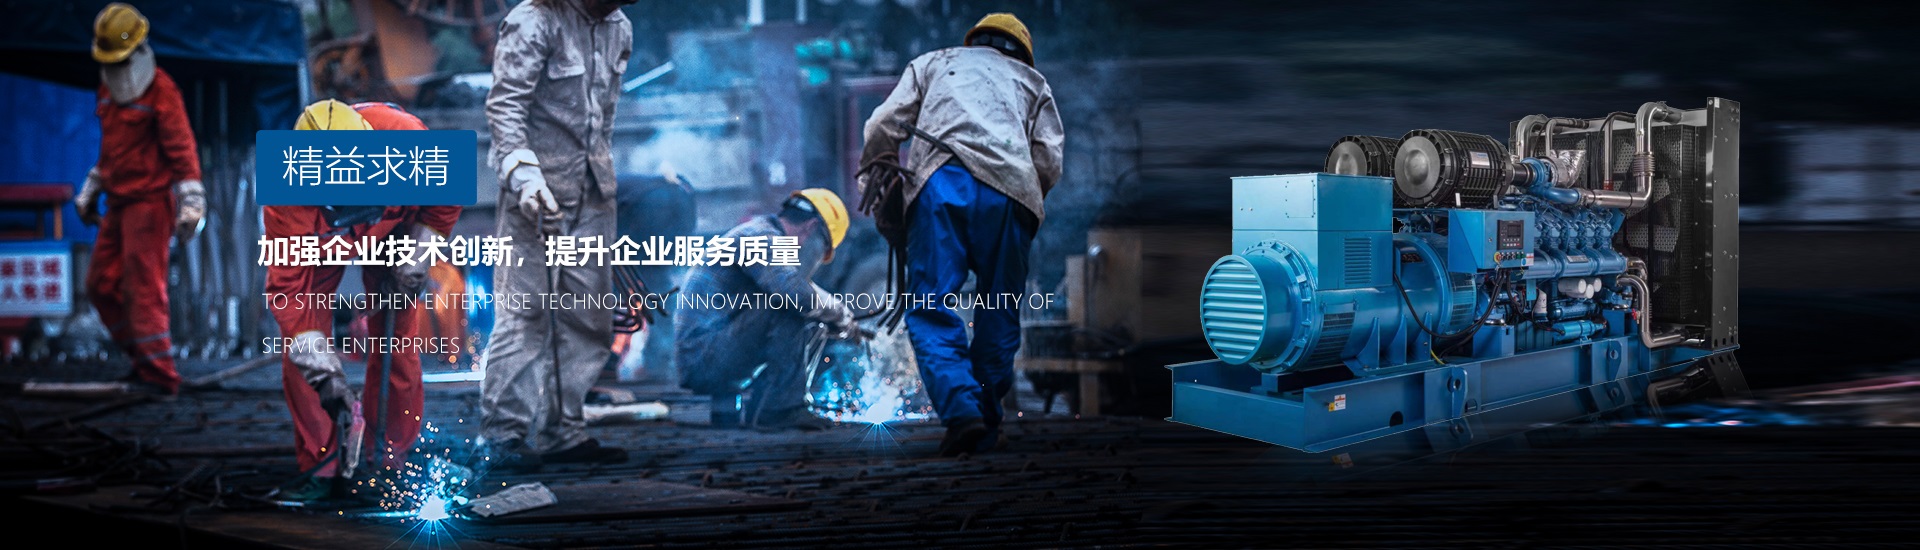 廣州發電機廠家追求精益求精、加強企業技術創新、提升企業服務質量